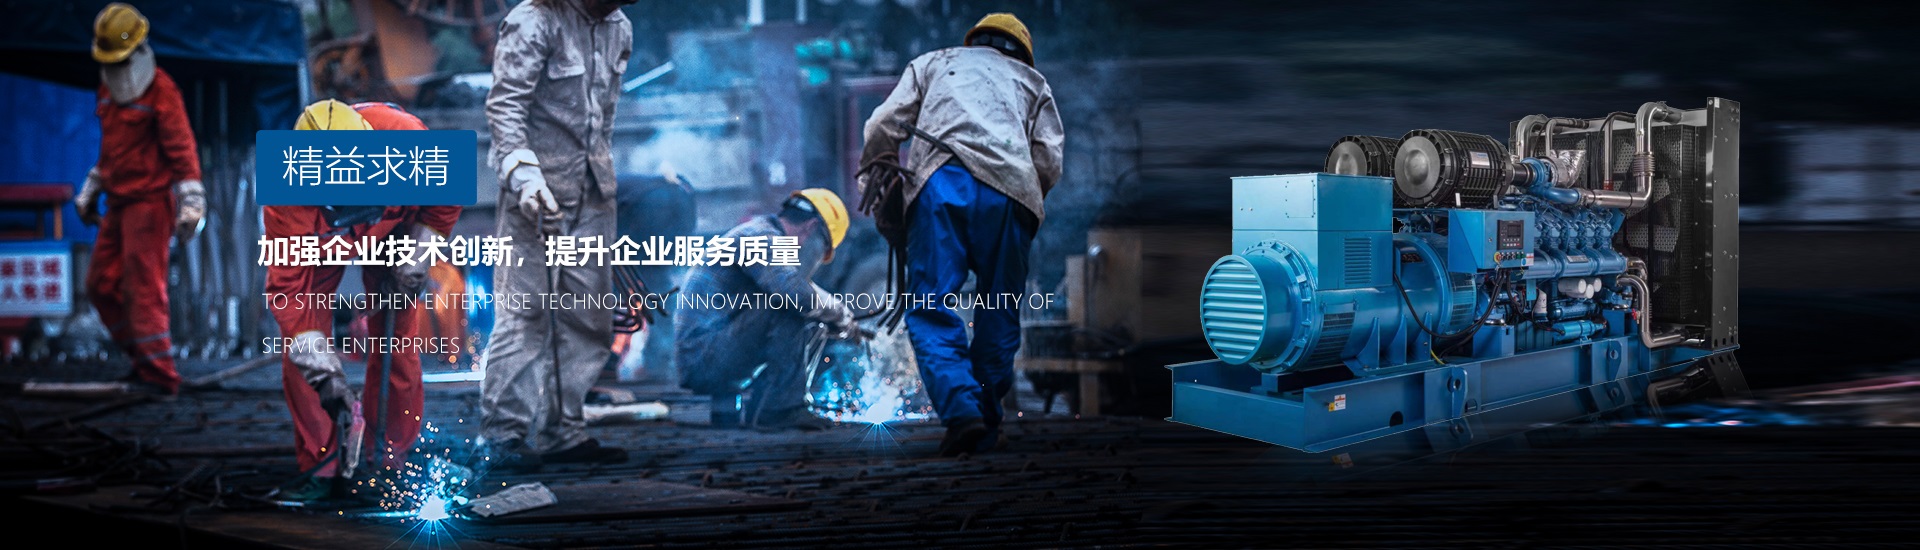 廣州發電機廠家追求精益求精、加強企業技術創新、提升企業服務質量